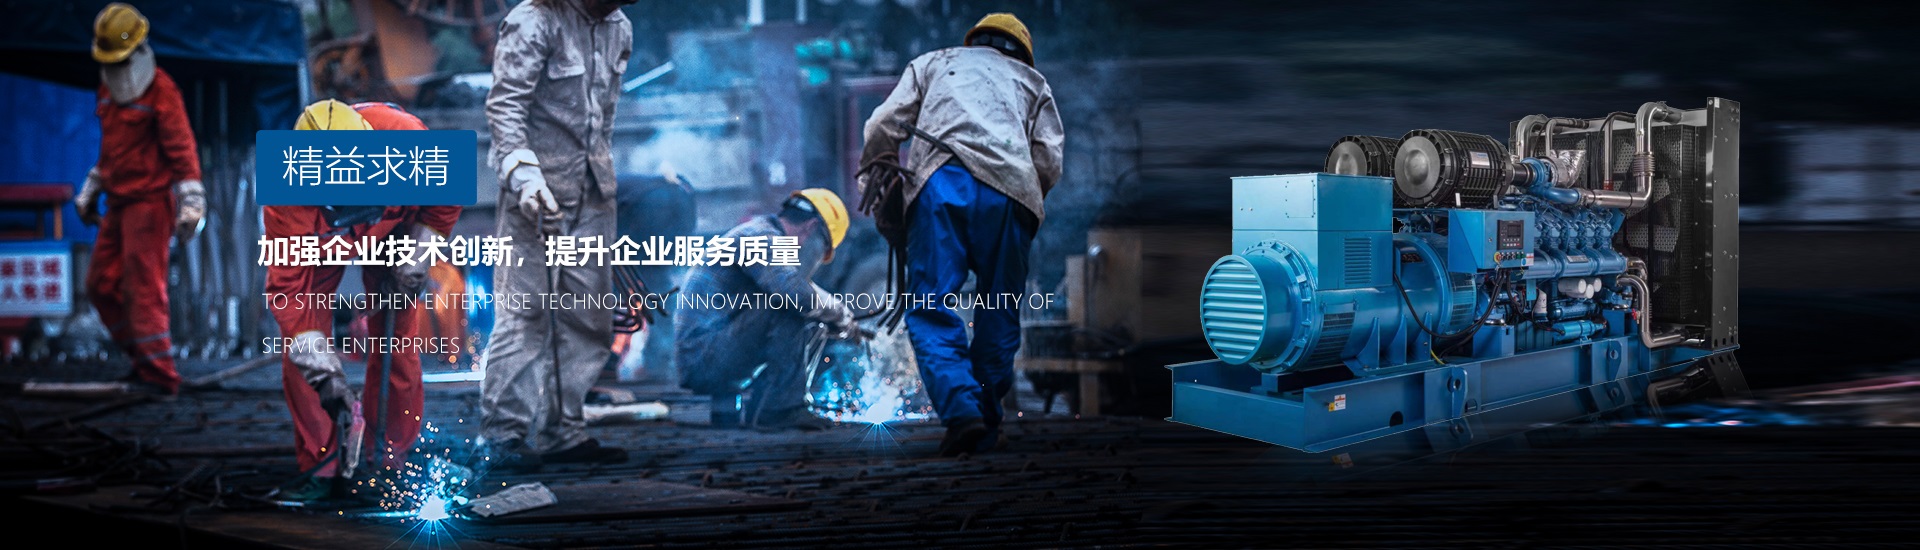 廣州發電機廠家追求精益求精、加強企業技術創新、提升企業服務質量